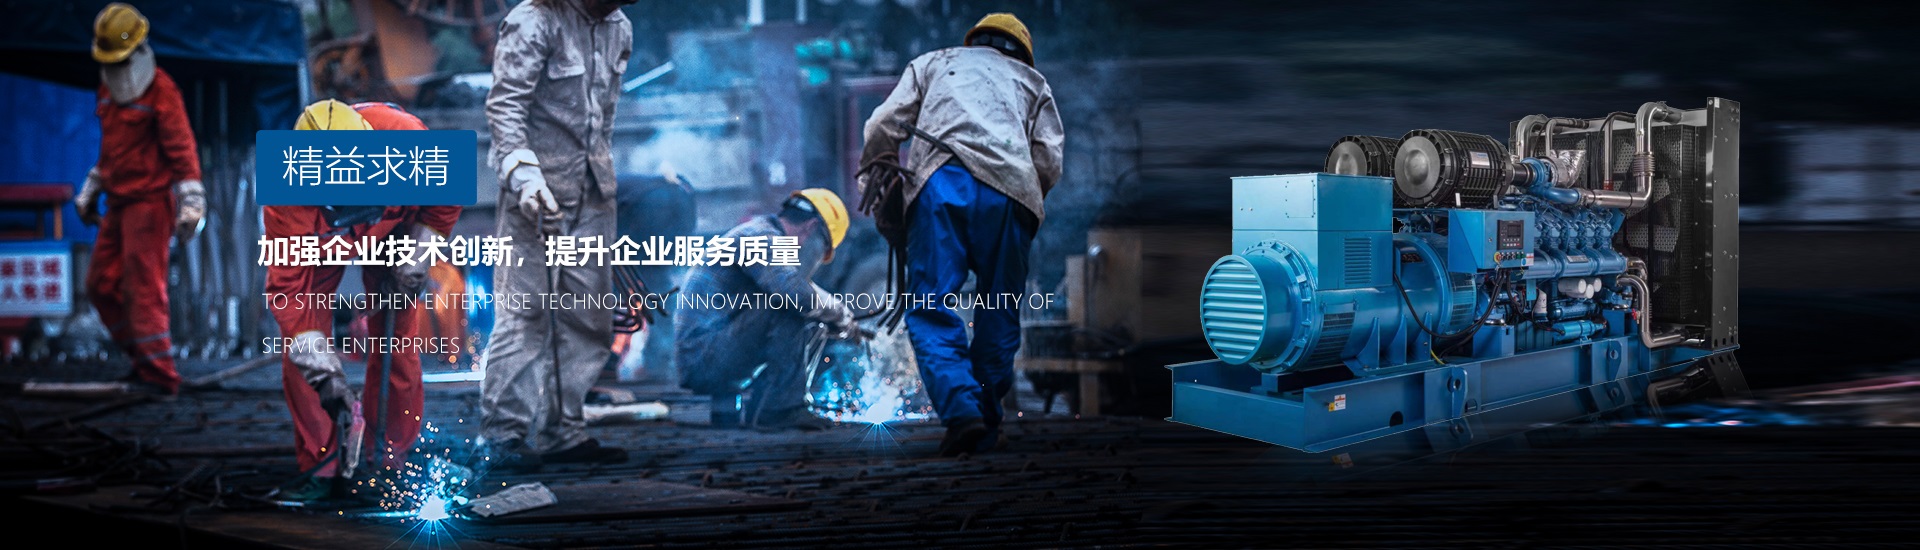 廣州發電機廠家追求精益求精、加強企業技術創新、提升企業服務質量